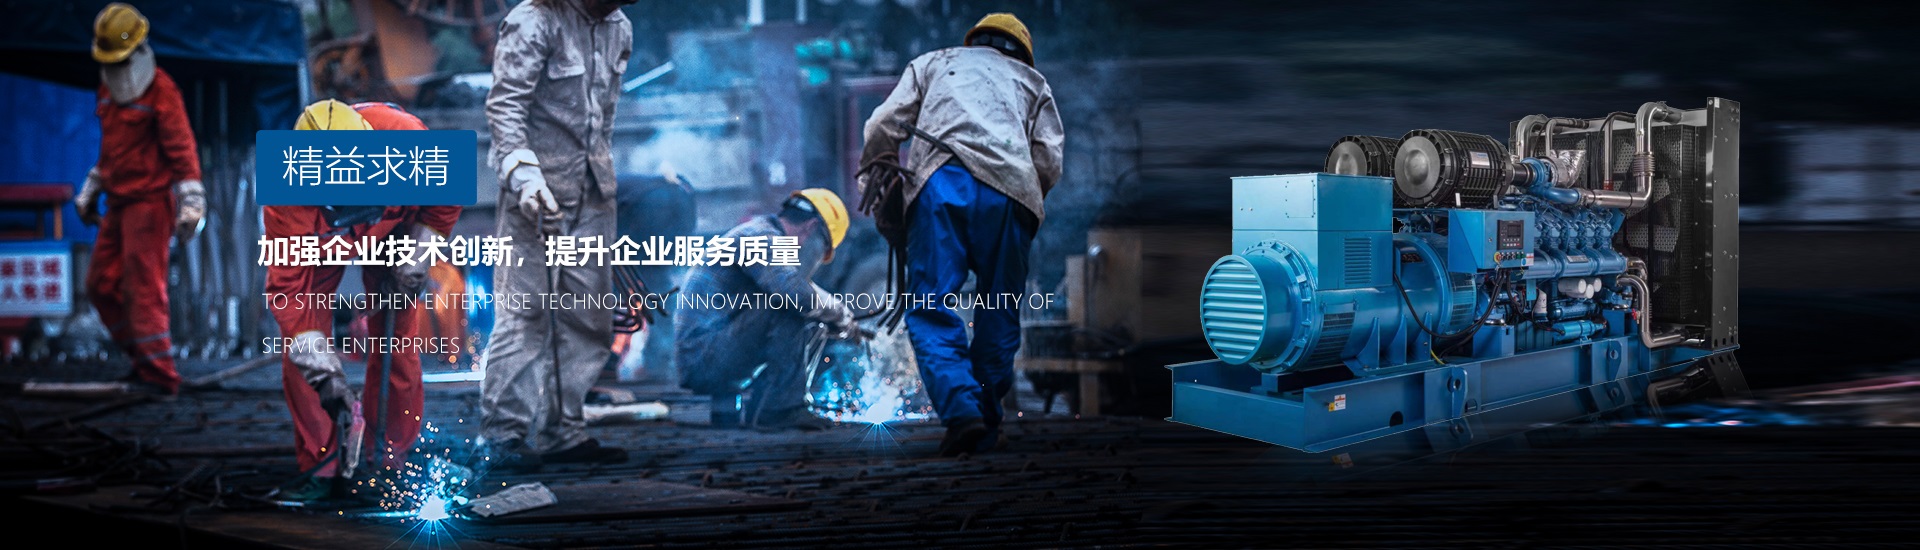 廣州發電機廠家追求精益求精、加強企業技術創新、提升企業服務質量